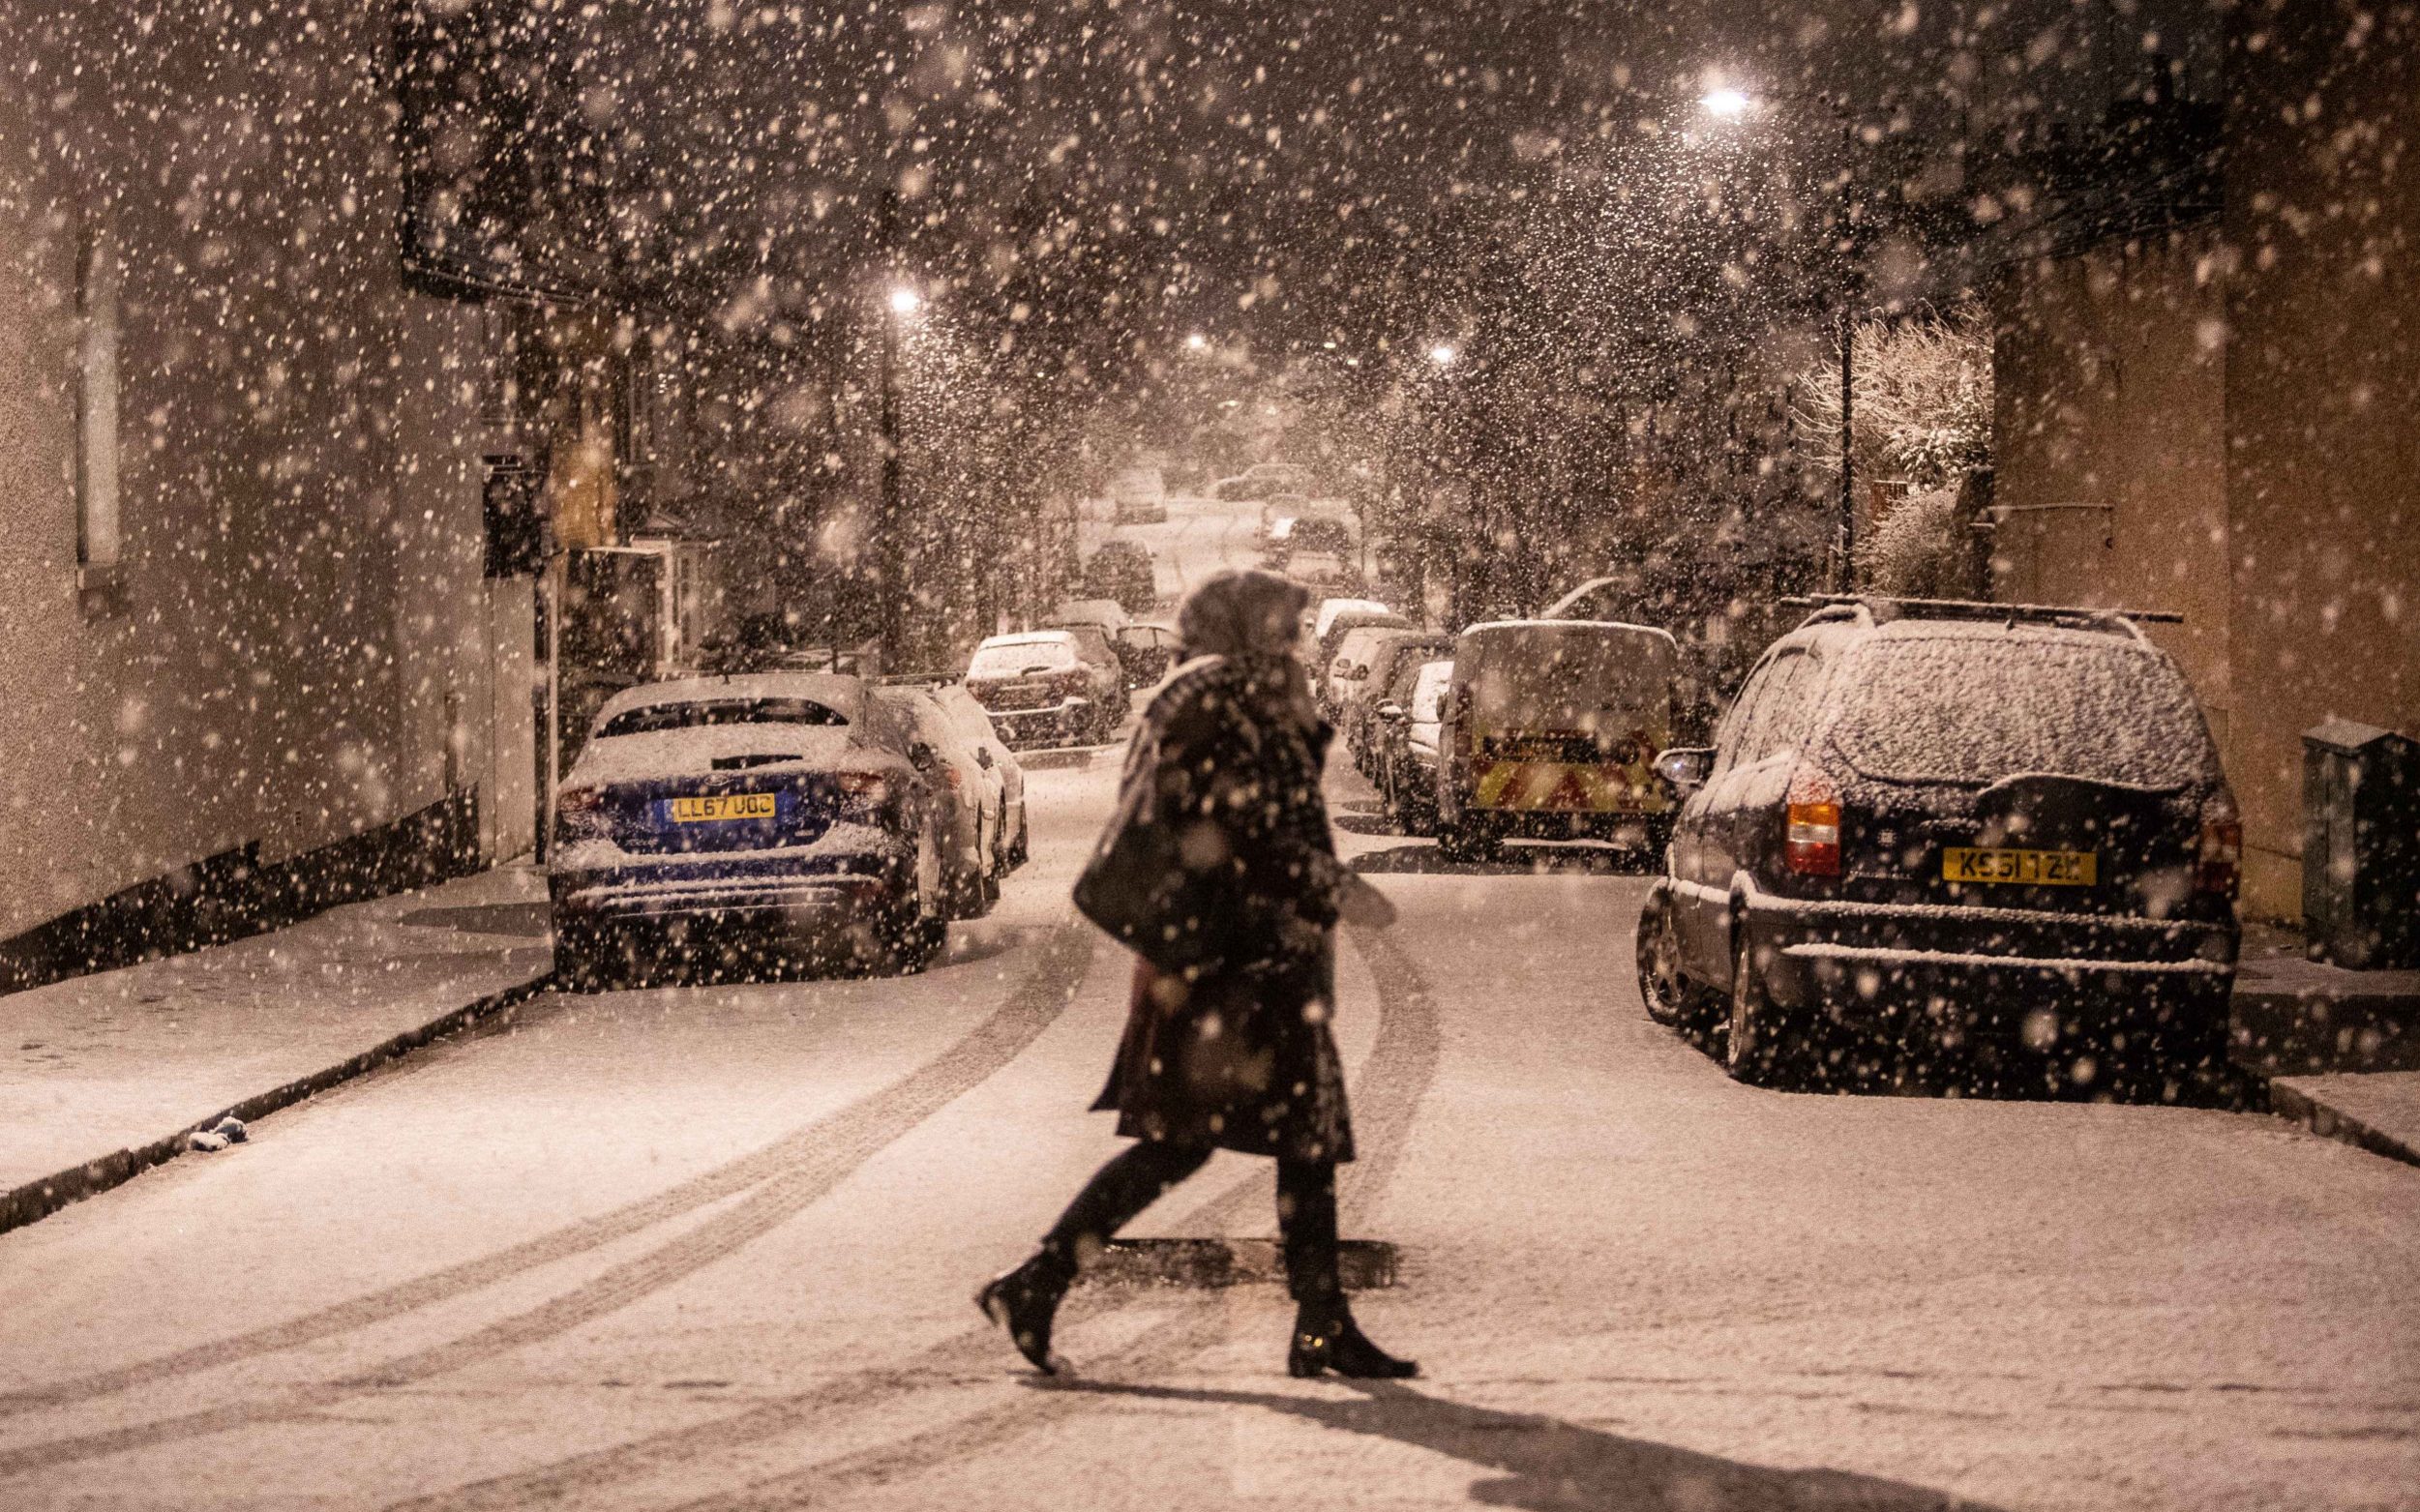 В Великобритании метеорологическое бюро выпустило желтое предупреждение о снеге и гололеде.